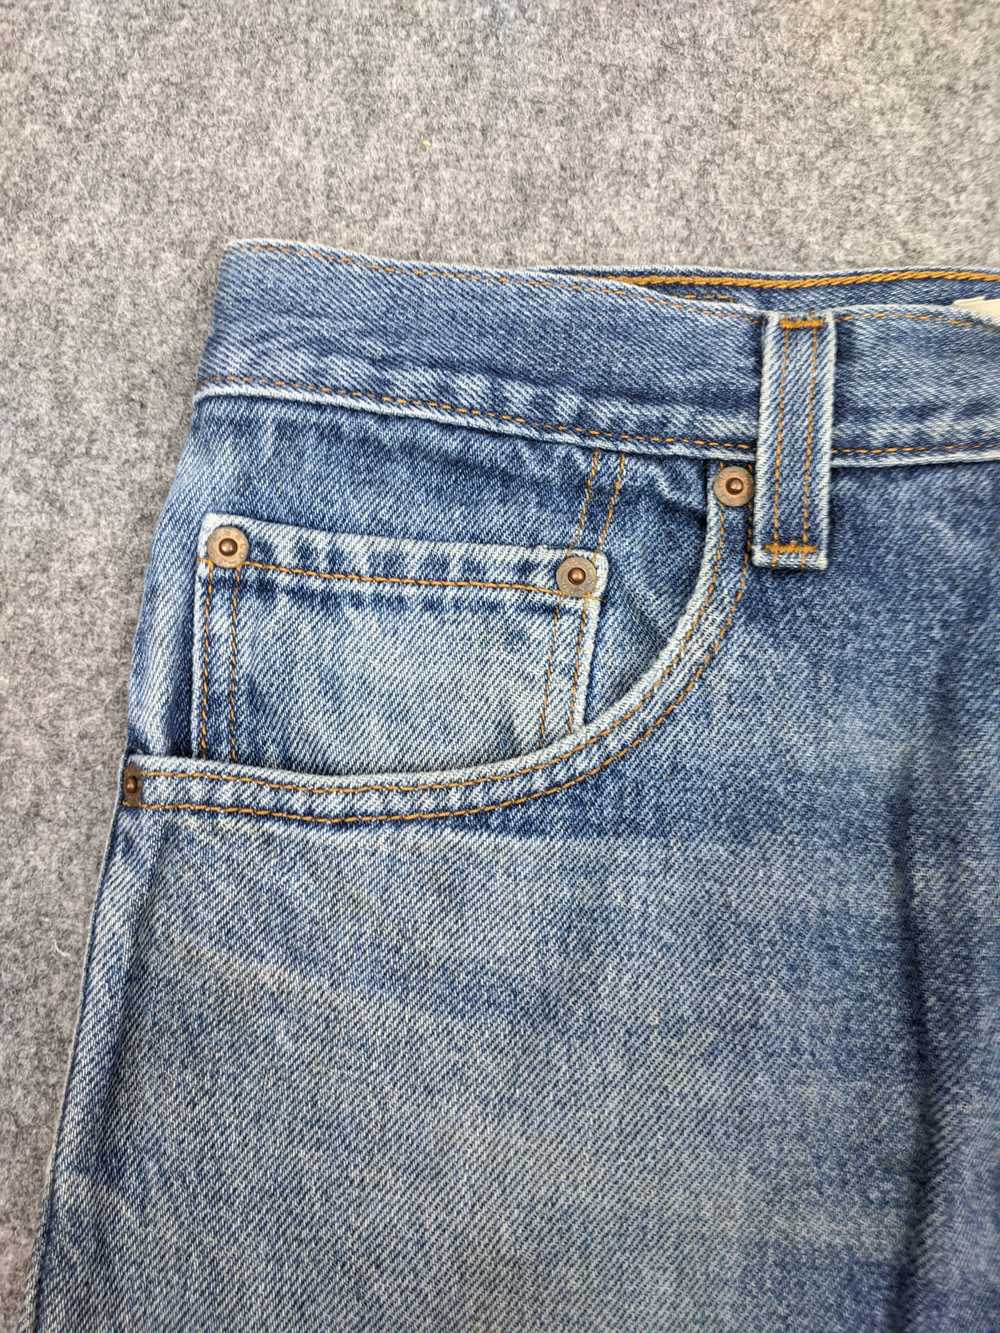 Vintage - Vintage Levis 517 Flared Bootcut Jeans - image 7